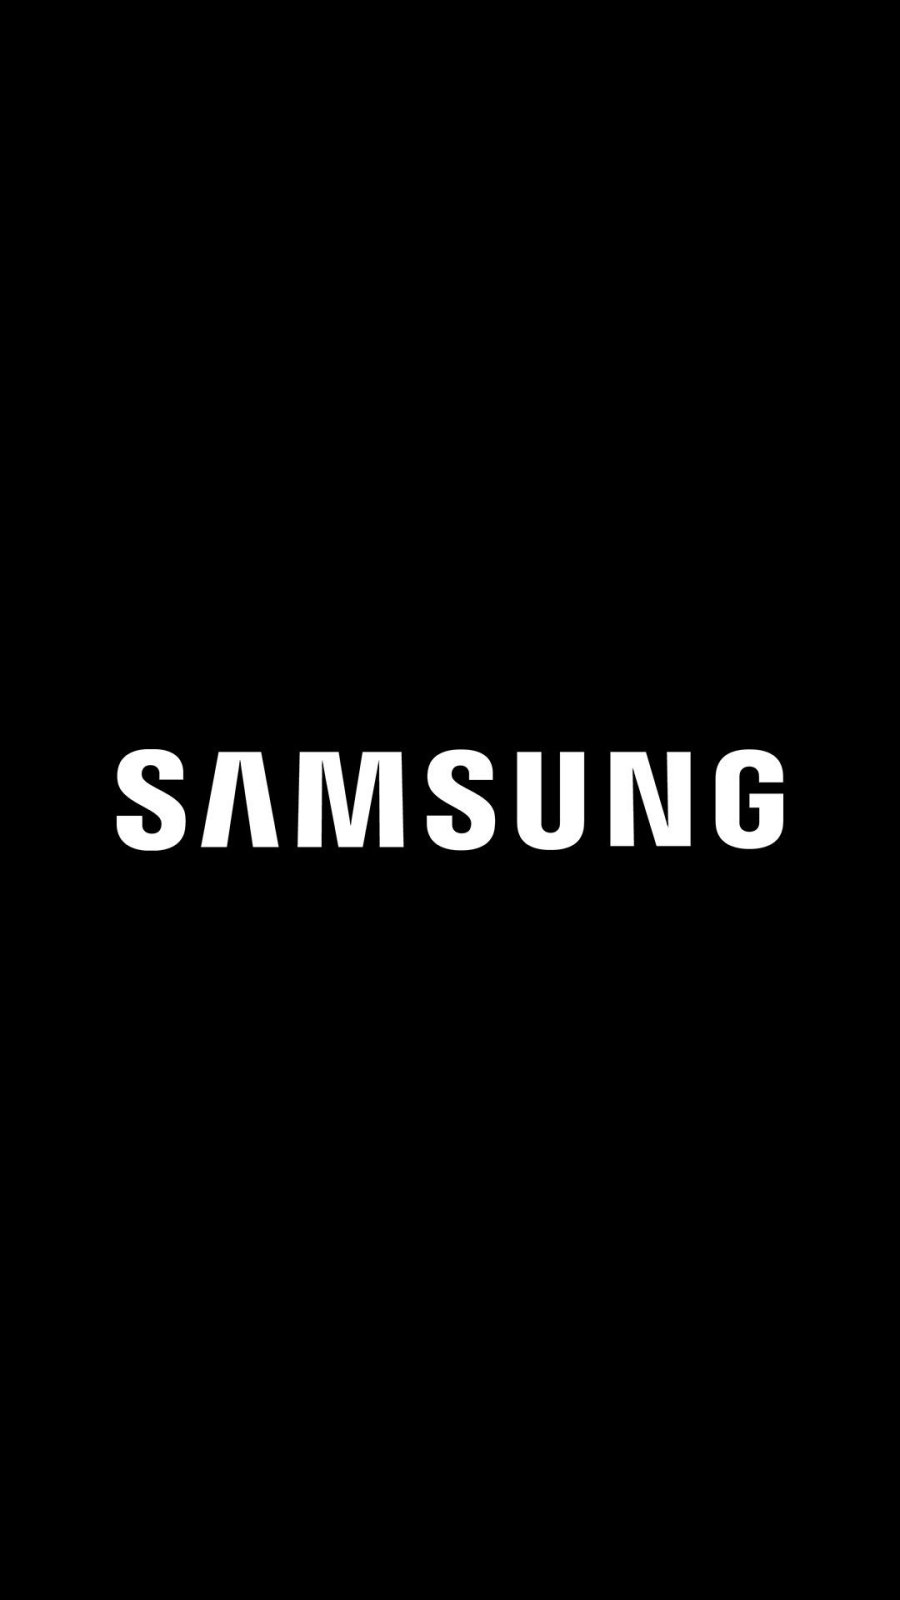 Gigant technologiczny Samsung odcina dostawy do Rosji: nigdy więcej telefonów i urządzeń